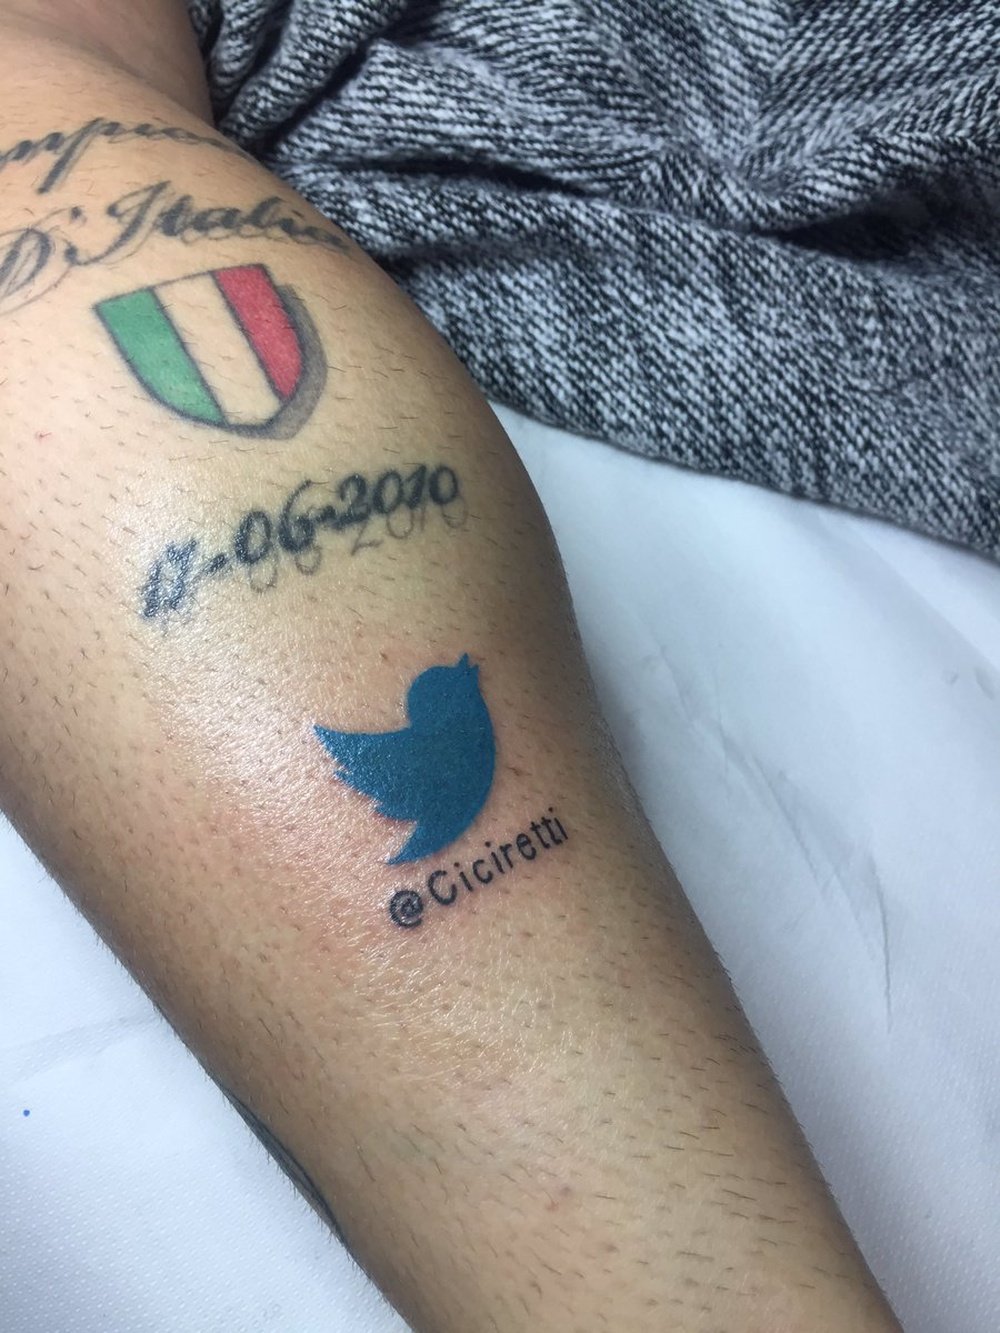 Cicretti se tatuó el logo de la red social Twitter. AmatoCiciretti